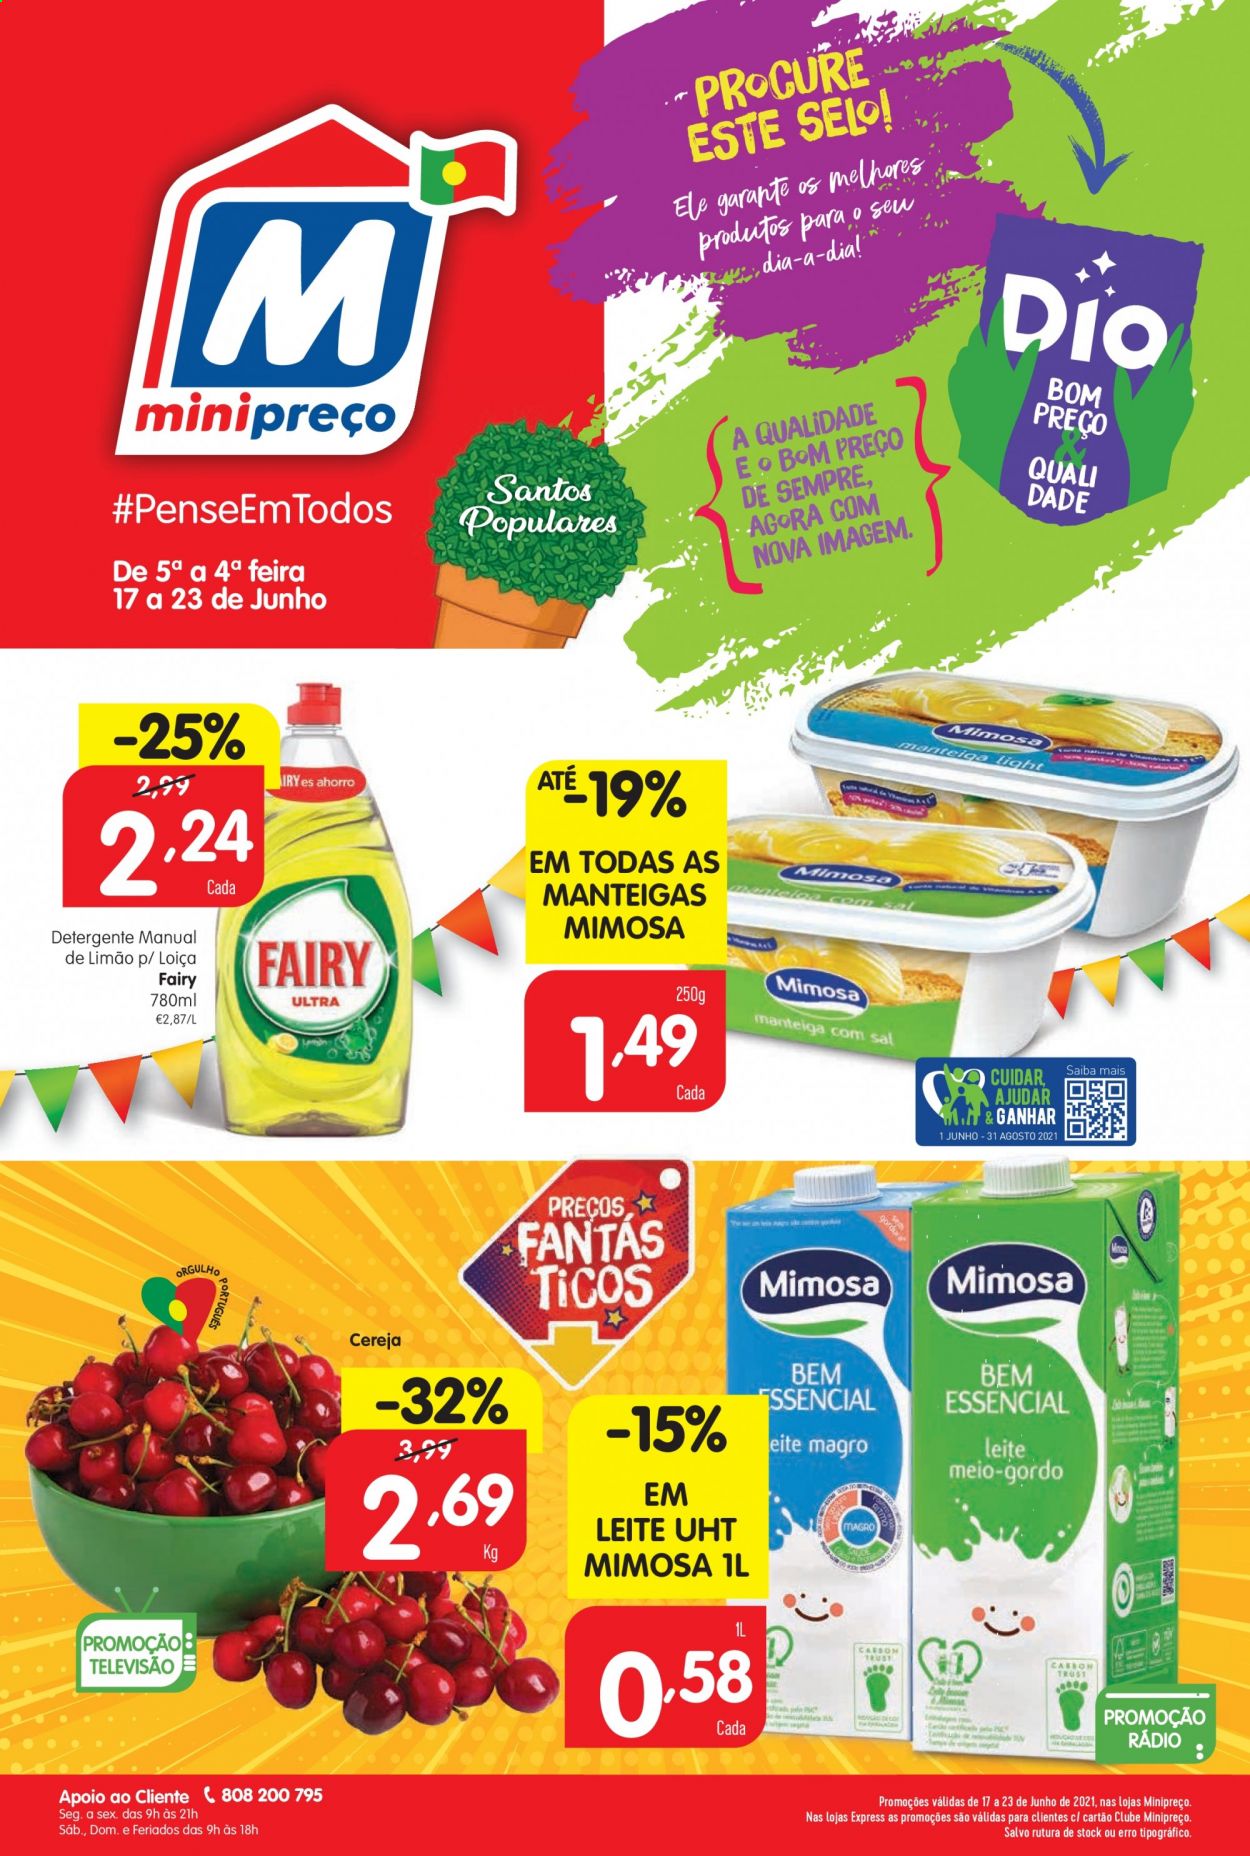 thumbnail - Folheto Minipreço - 17.6.2021 - 23.6.2021 - Produtos em promoção - cereja, Mimosa, leite, manteiga, detergente. Página 1.